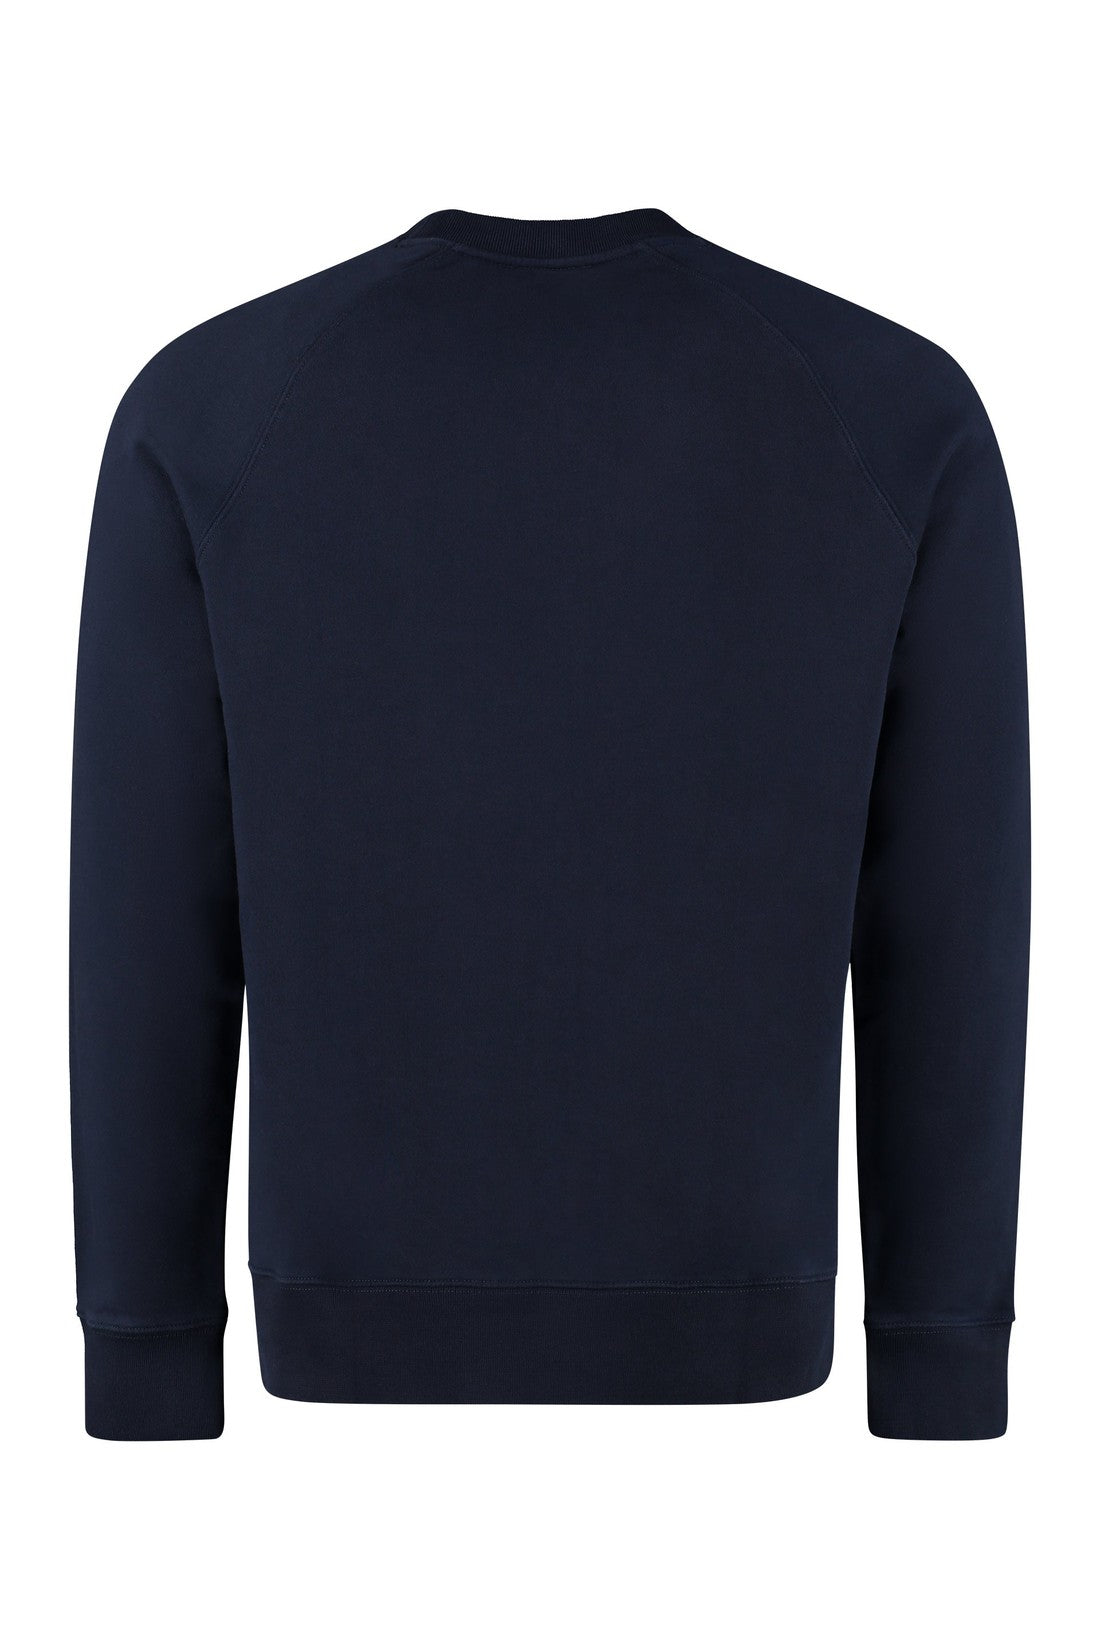 Maison Kitsuné-OUTLET-SALE-Cotton crew-neck sweatshirt with logo-ARCHIVIST